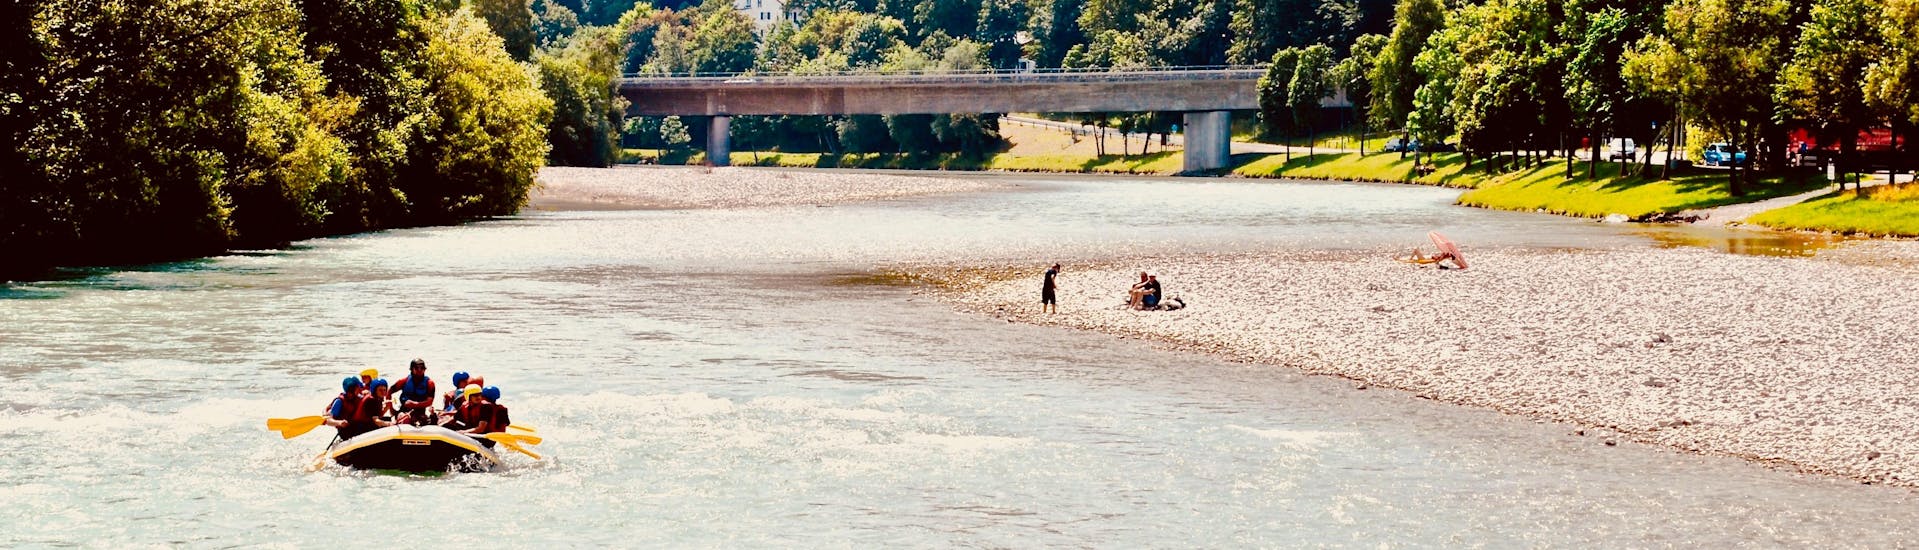 Río en Bad Tolz durante una actividad de rafting en Alemania.